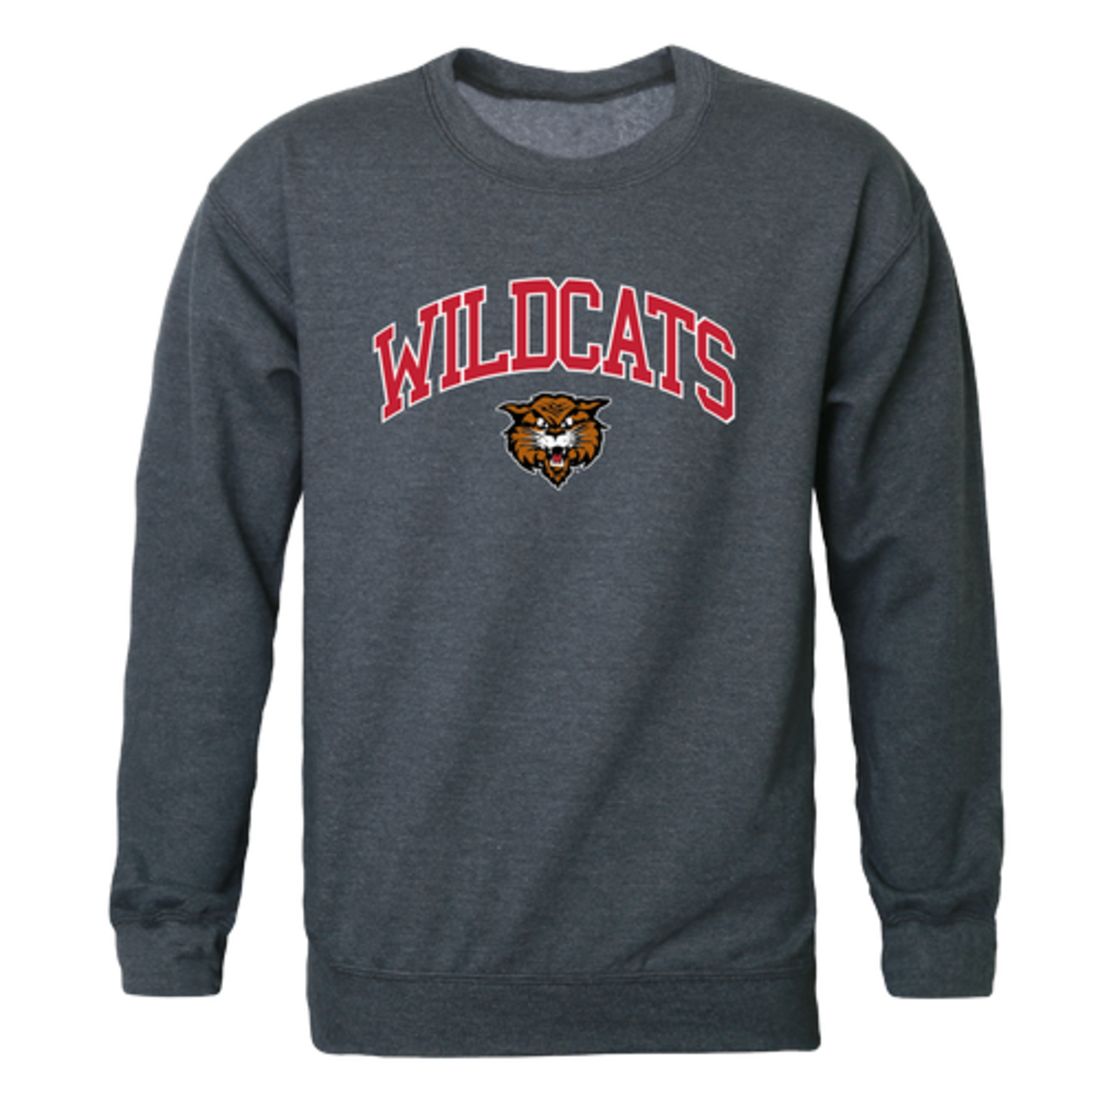 NDSCS North Dakota State College of Science Wildcats Campus Crewneck Sweatshirt